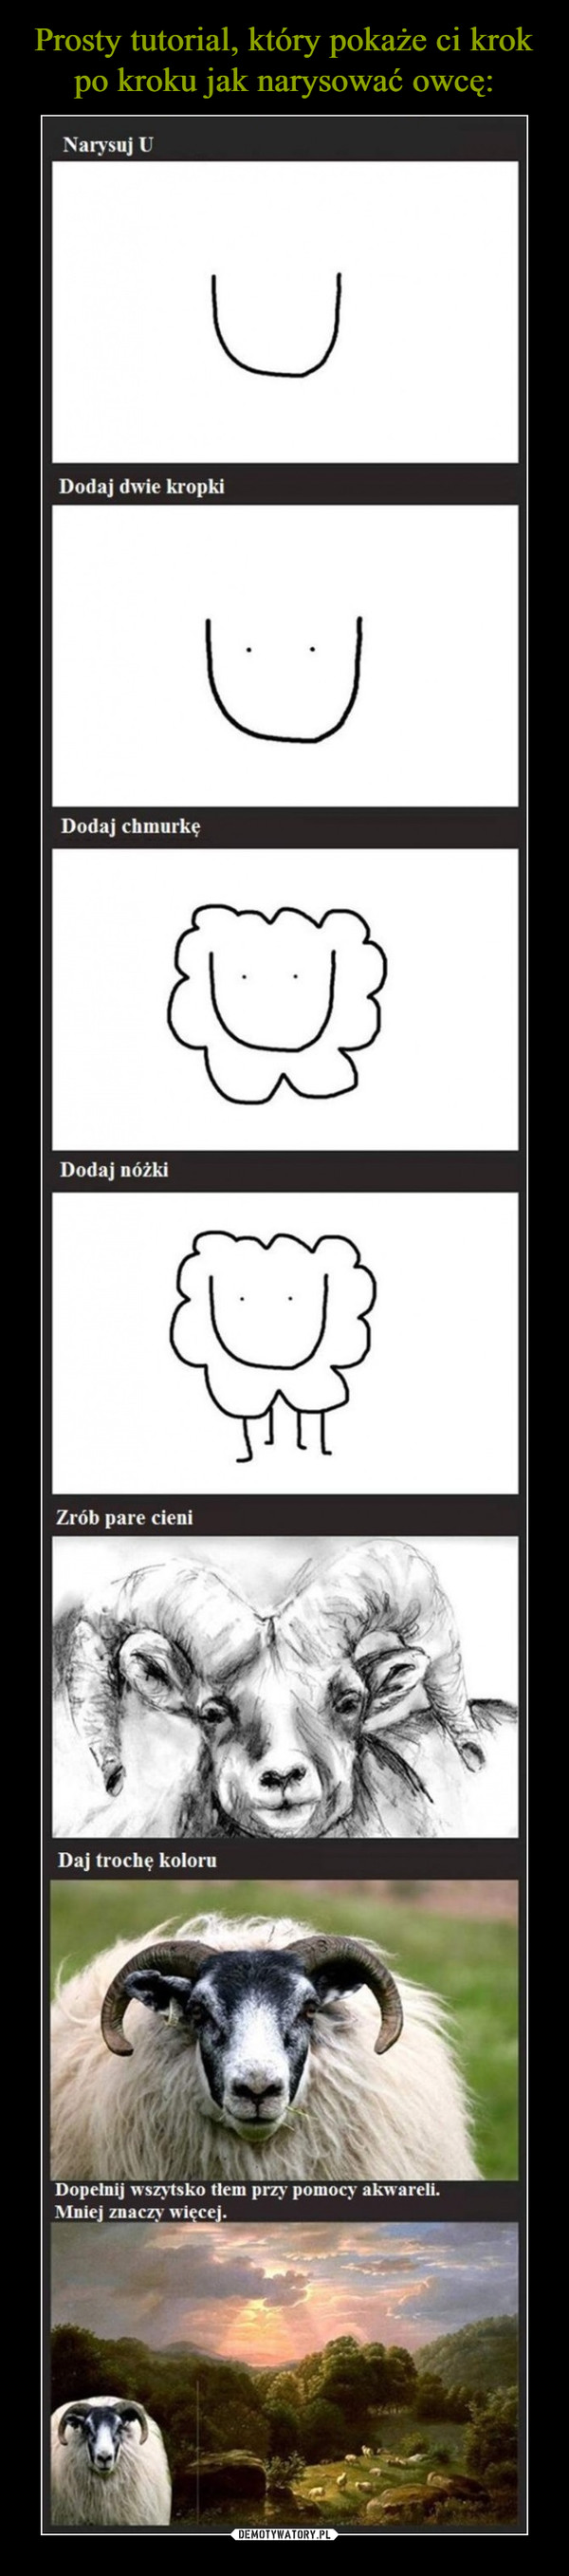 Prosty tutorial, który pokaże ci krok po kroku jak narysować owcę: